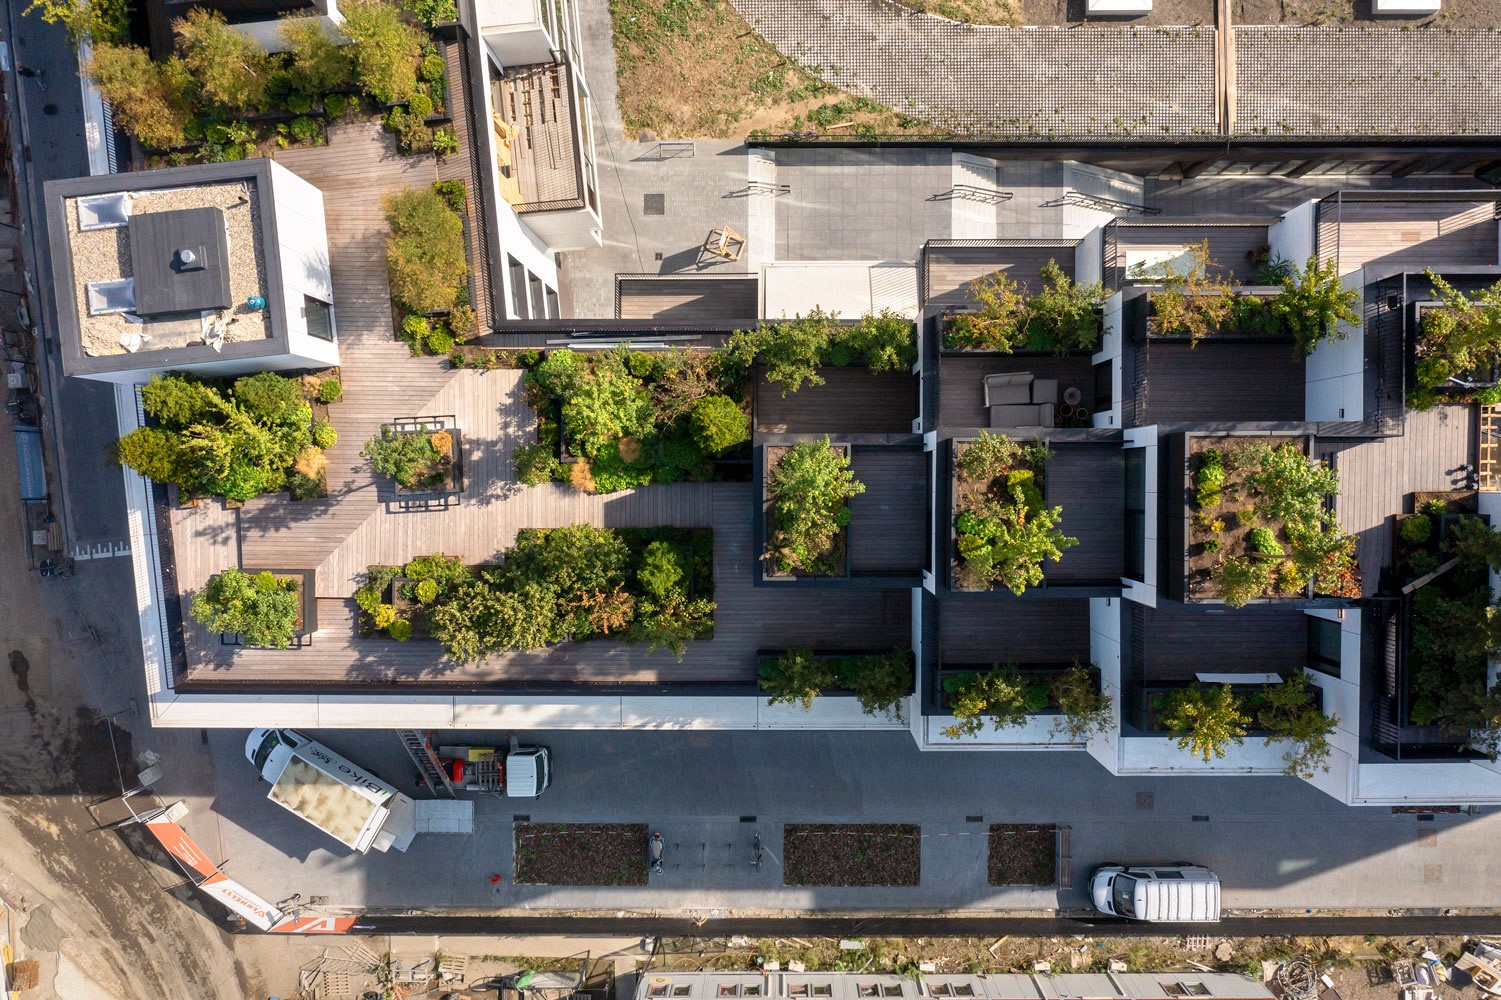 Palazzo Verde, Nieuw Zuid: luchtfoto van het groen op de daken